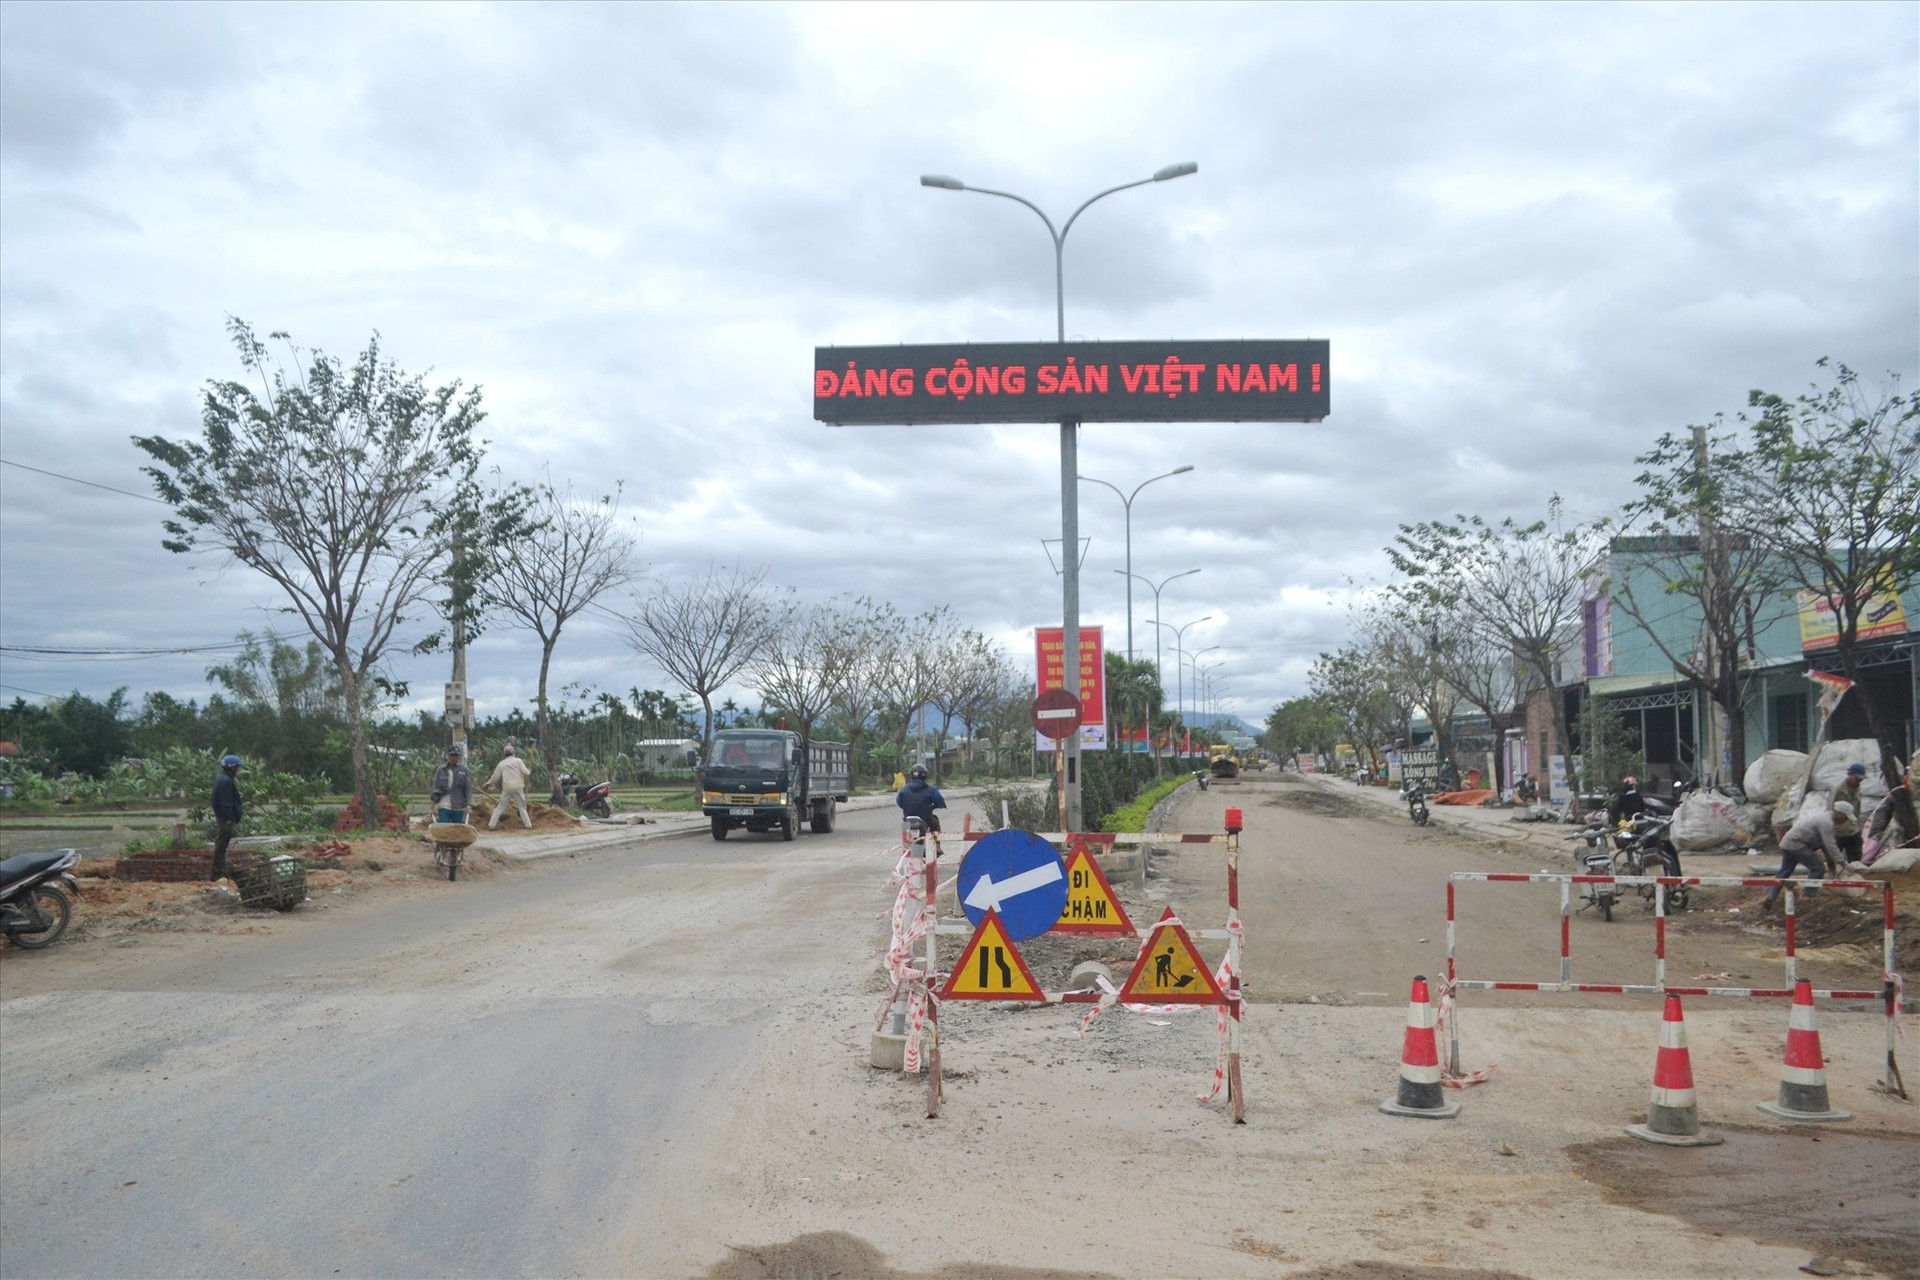 Vị trí sửa chữa là đoạn đường đôi, giáp ranh giữa thị xã Điện Bàn lên địa phận thị trấn Ái Nghĩa của huyện Đại Lộc. Ảnh: CT